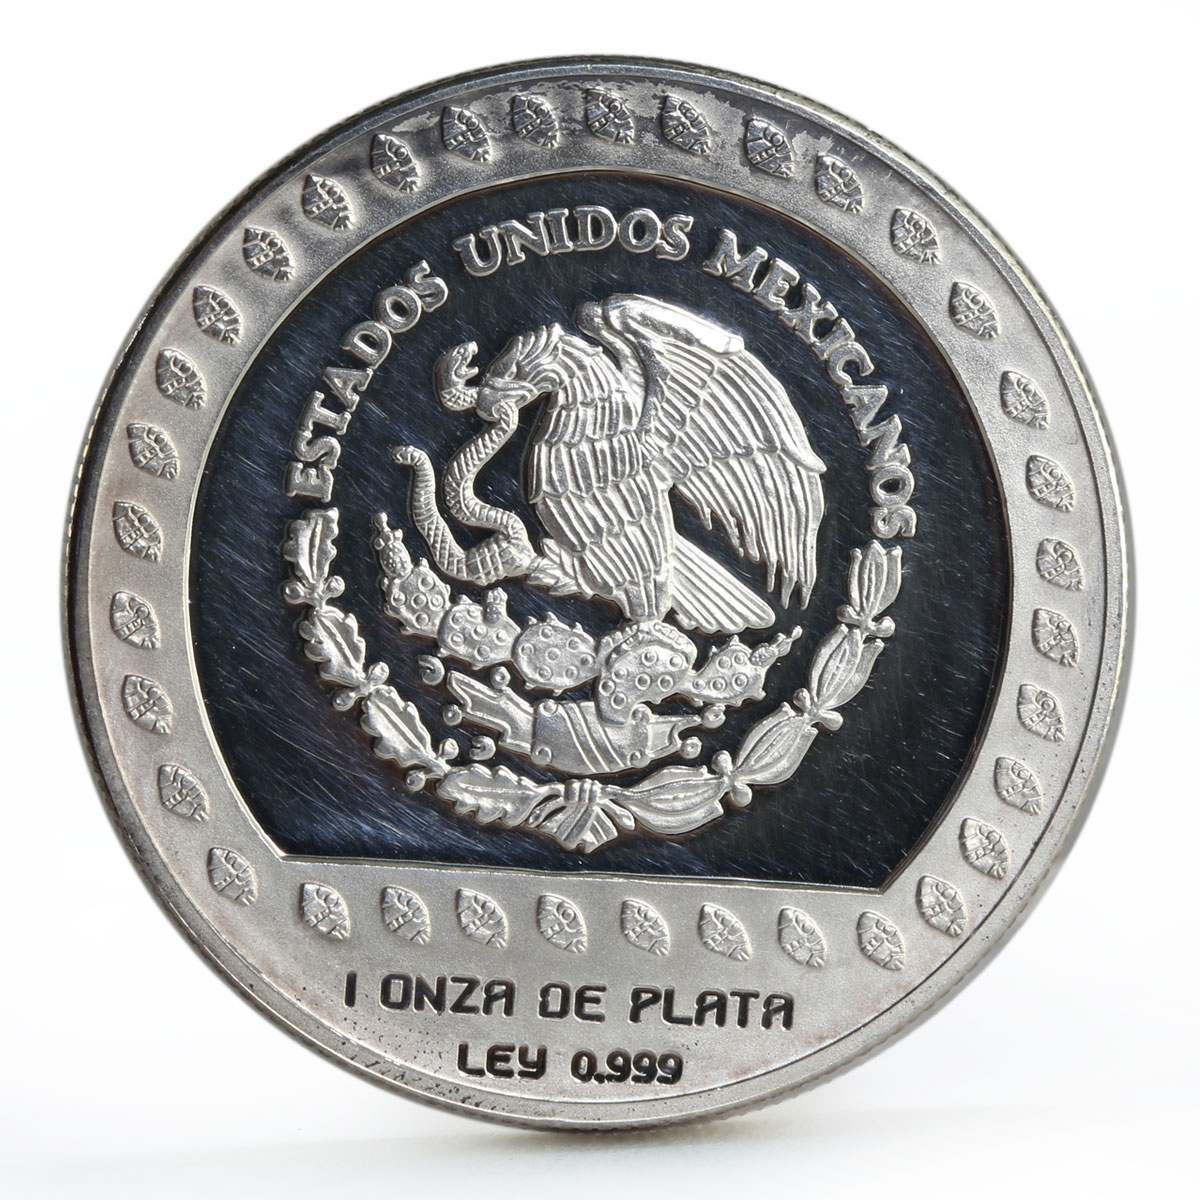 Mexico 100 pesos Guerrero Aguila proof silver coin 1992